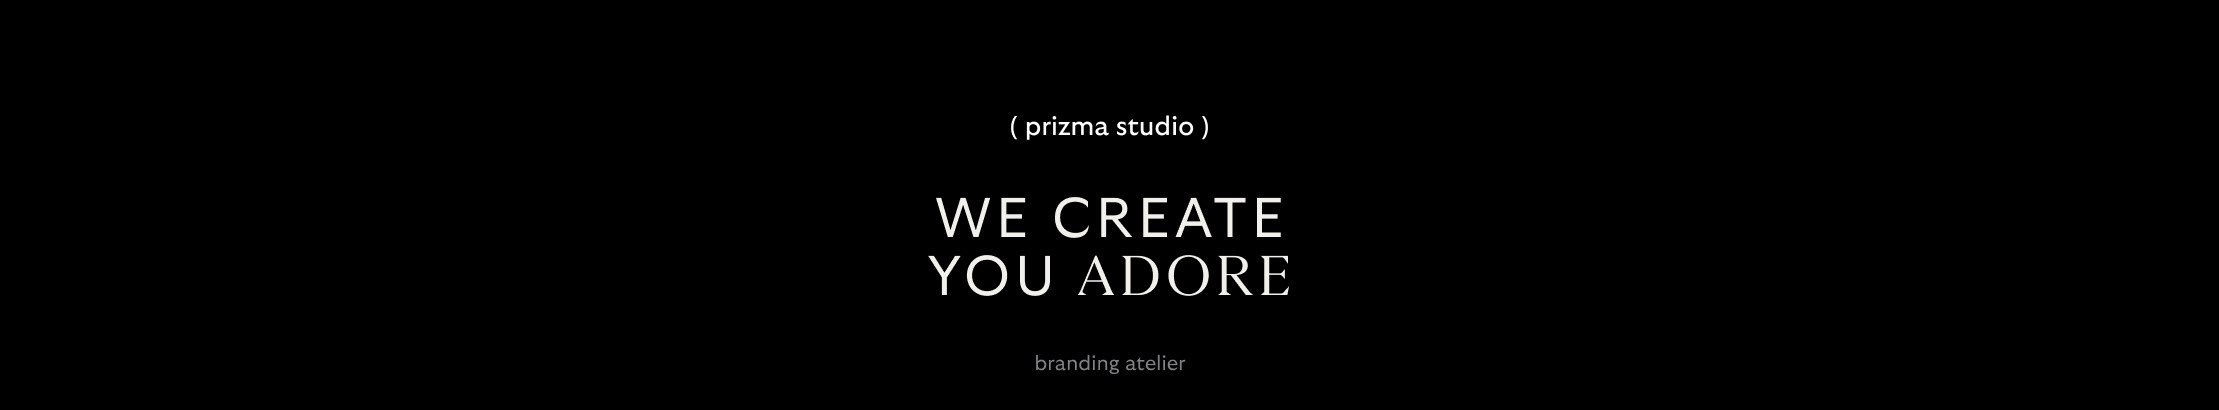 Prizma Studio's profile banner